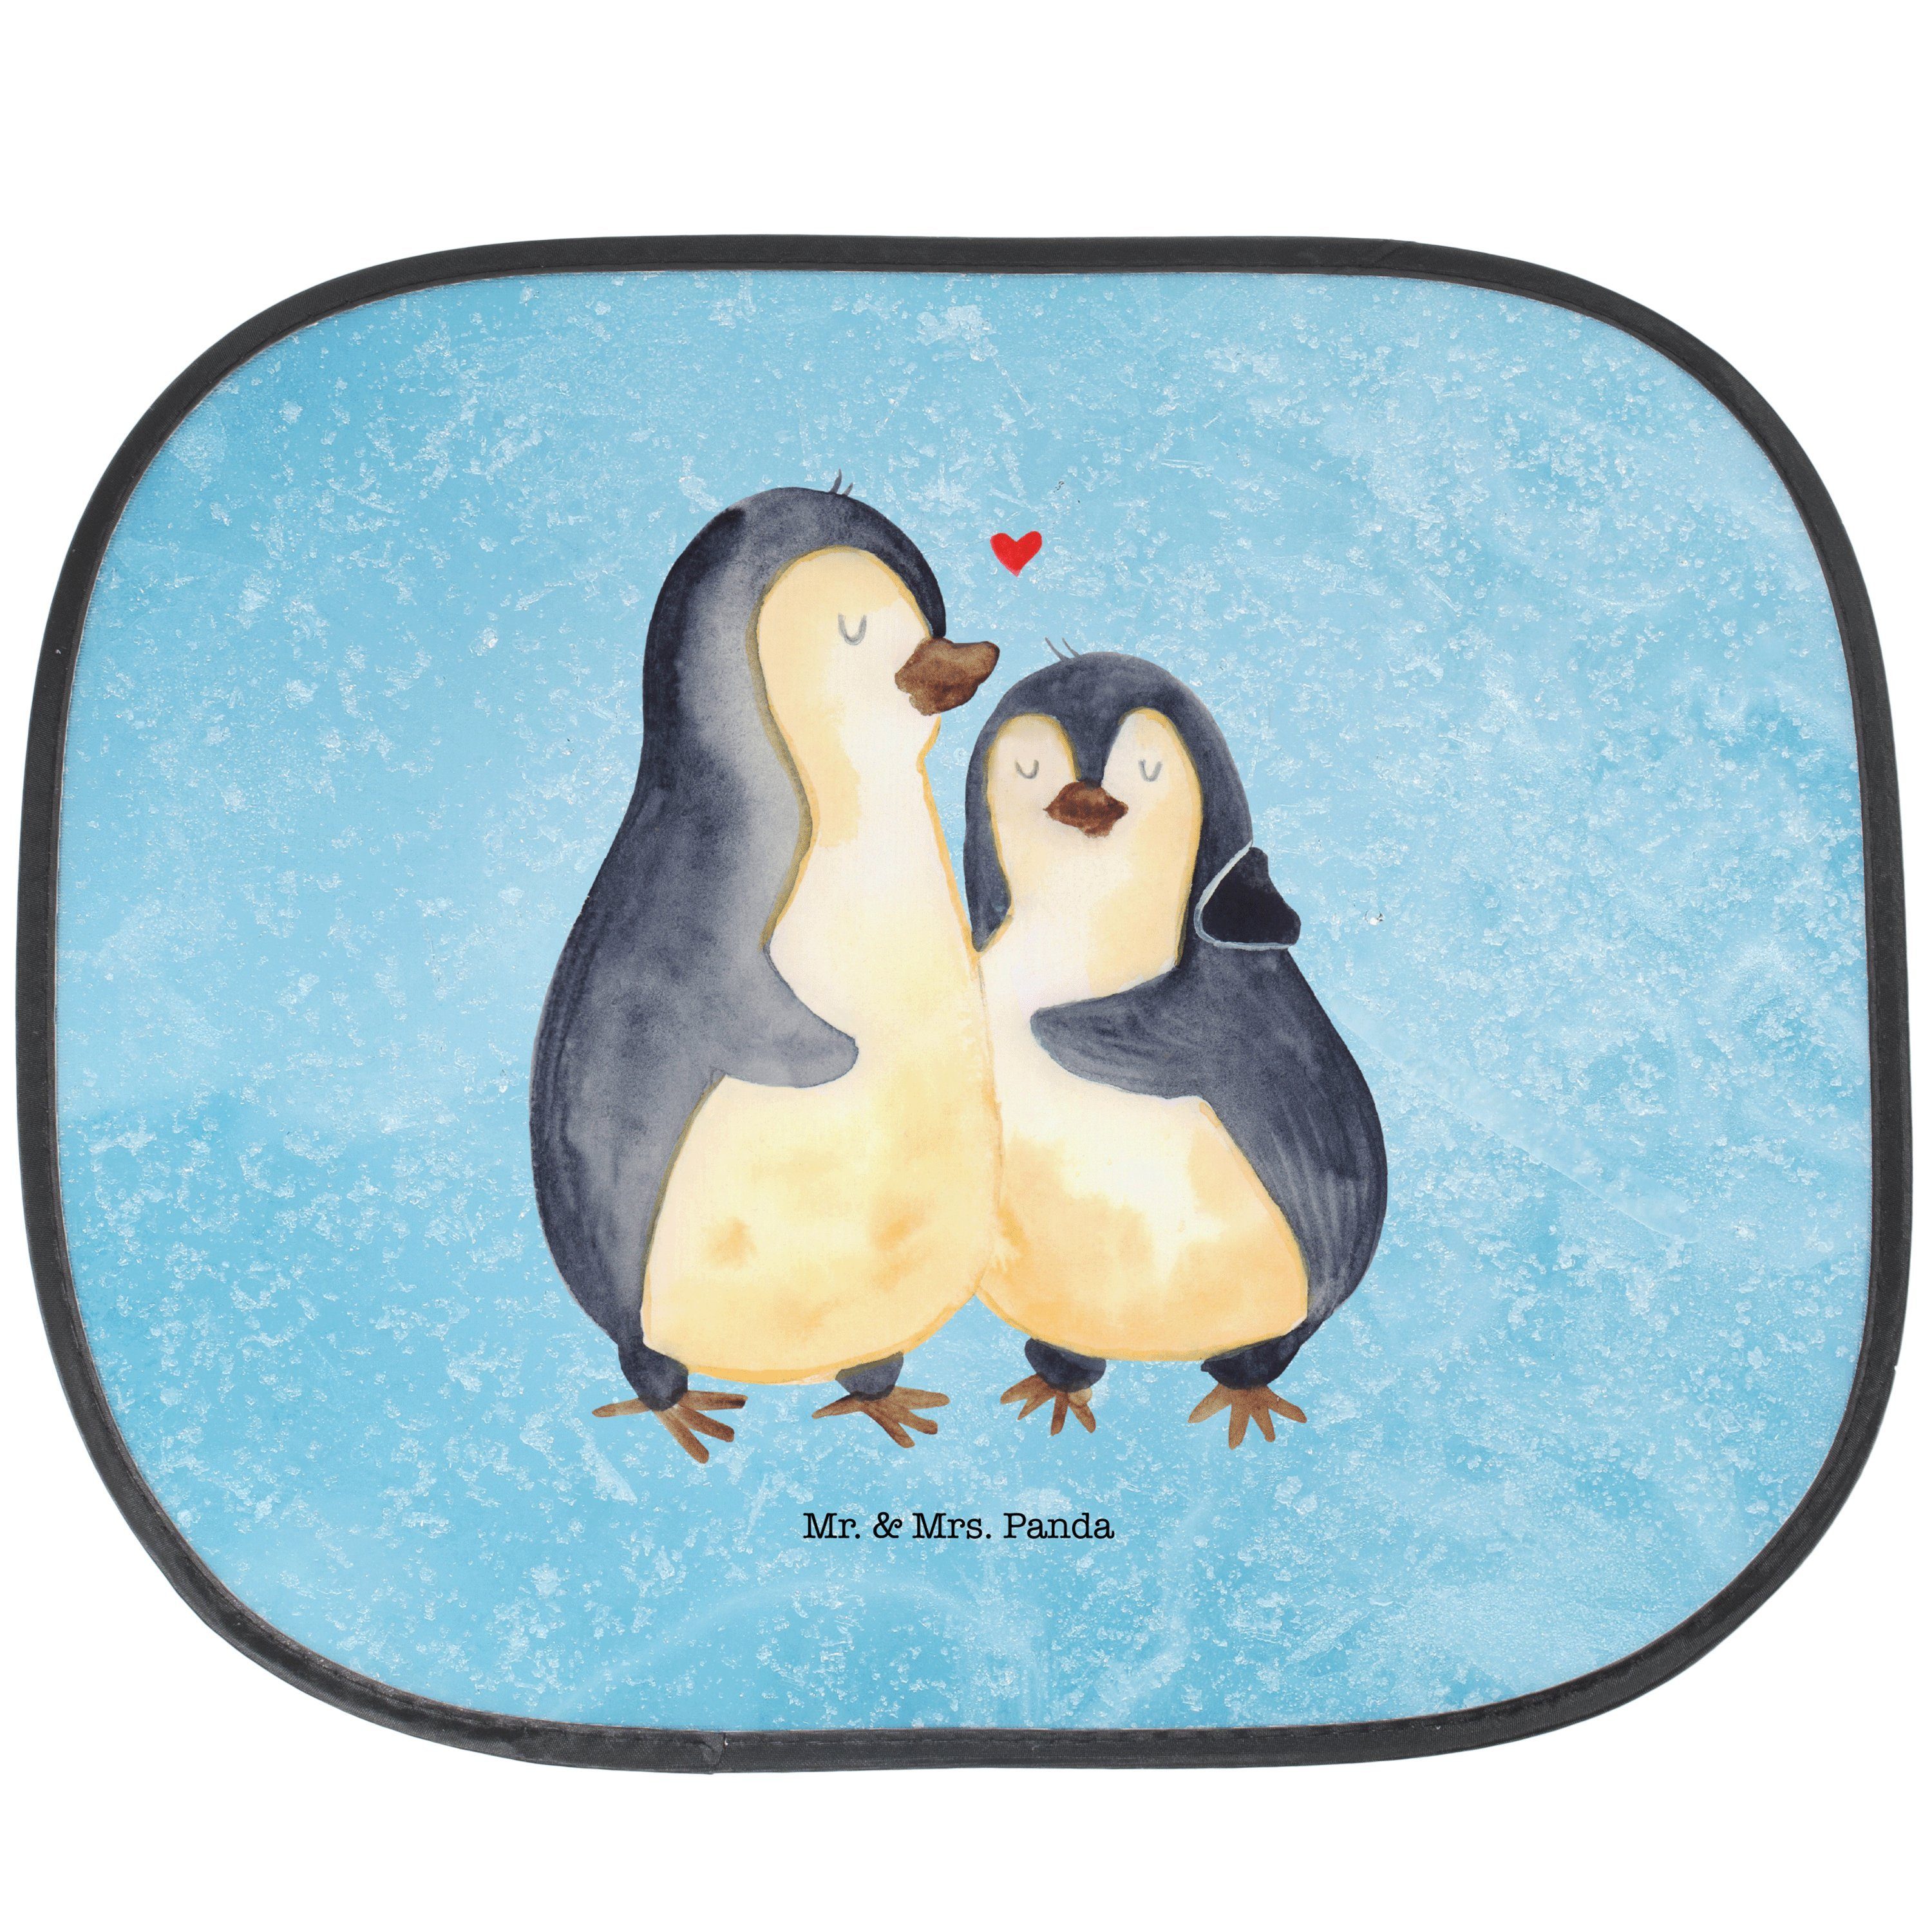 Sonnenschutz Pinguin umarmend - Eisblau - Geschenk, Sonnenschutz Baby, Liebesbewei, Mr. & Mrs. Panda, Seidenmatt